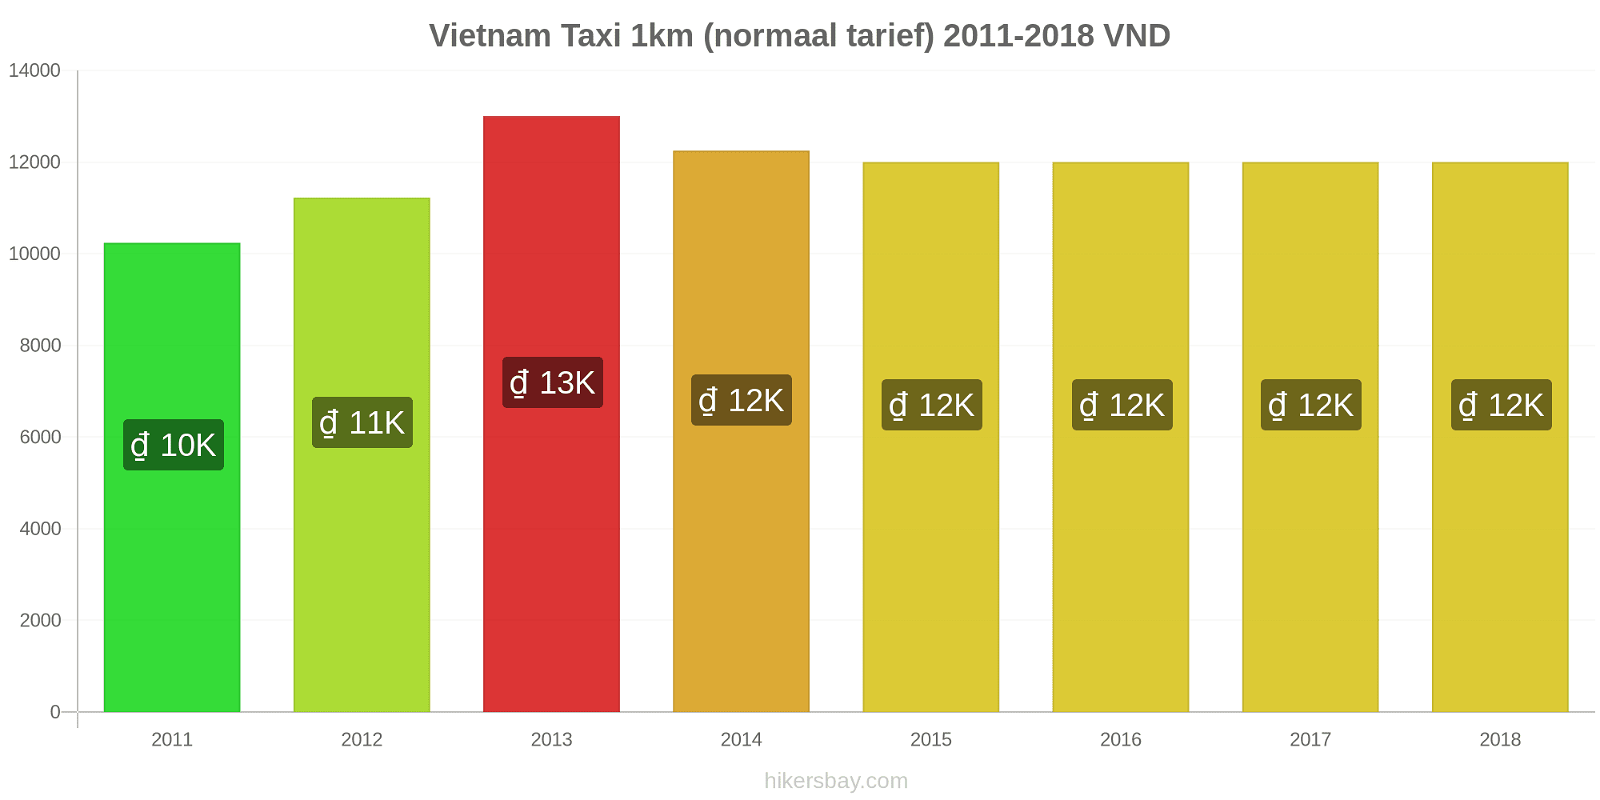 Vietnam prijswijzigingen Taxi 1km (normaal tarief) hikersbay.com